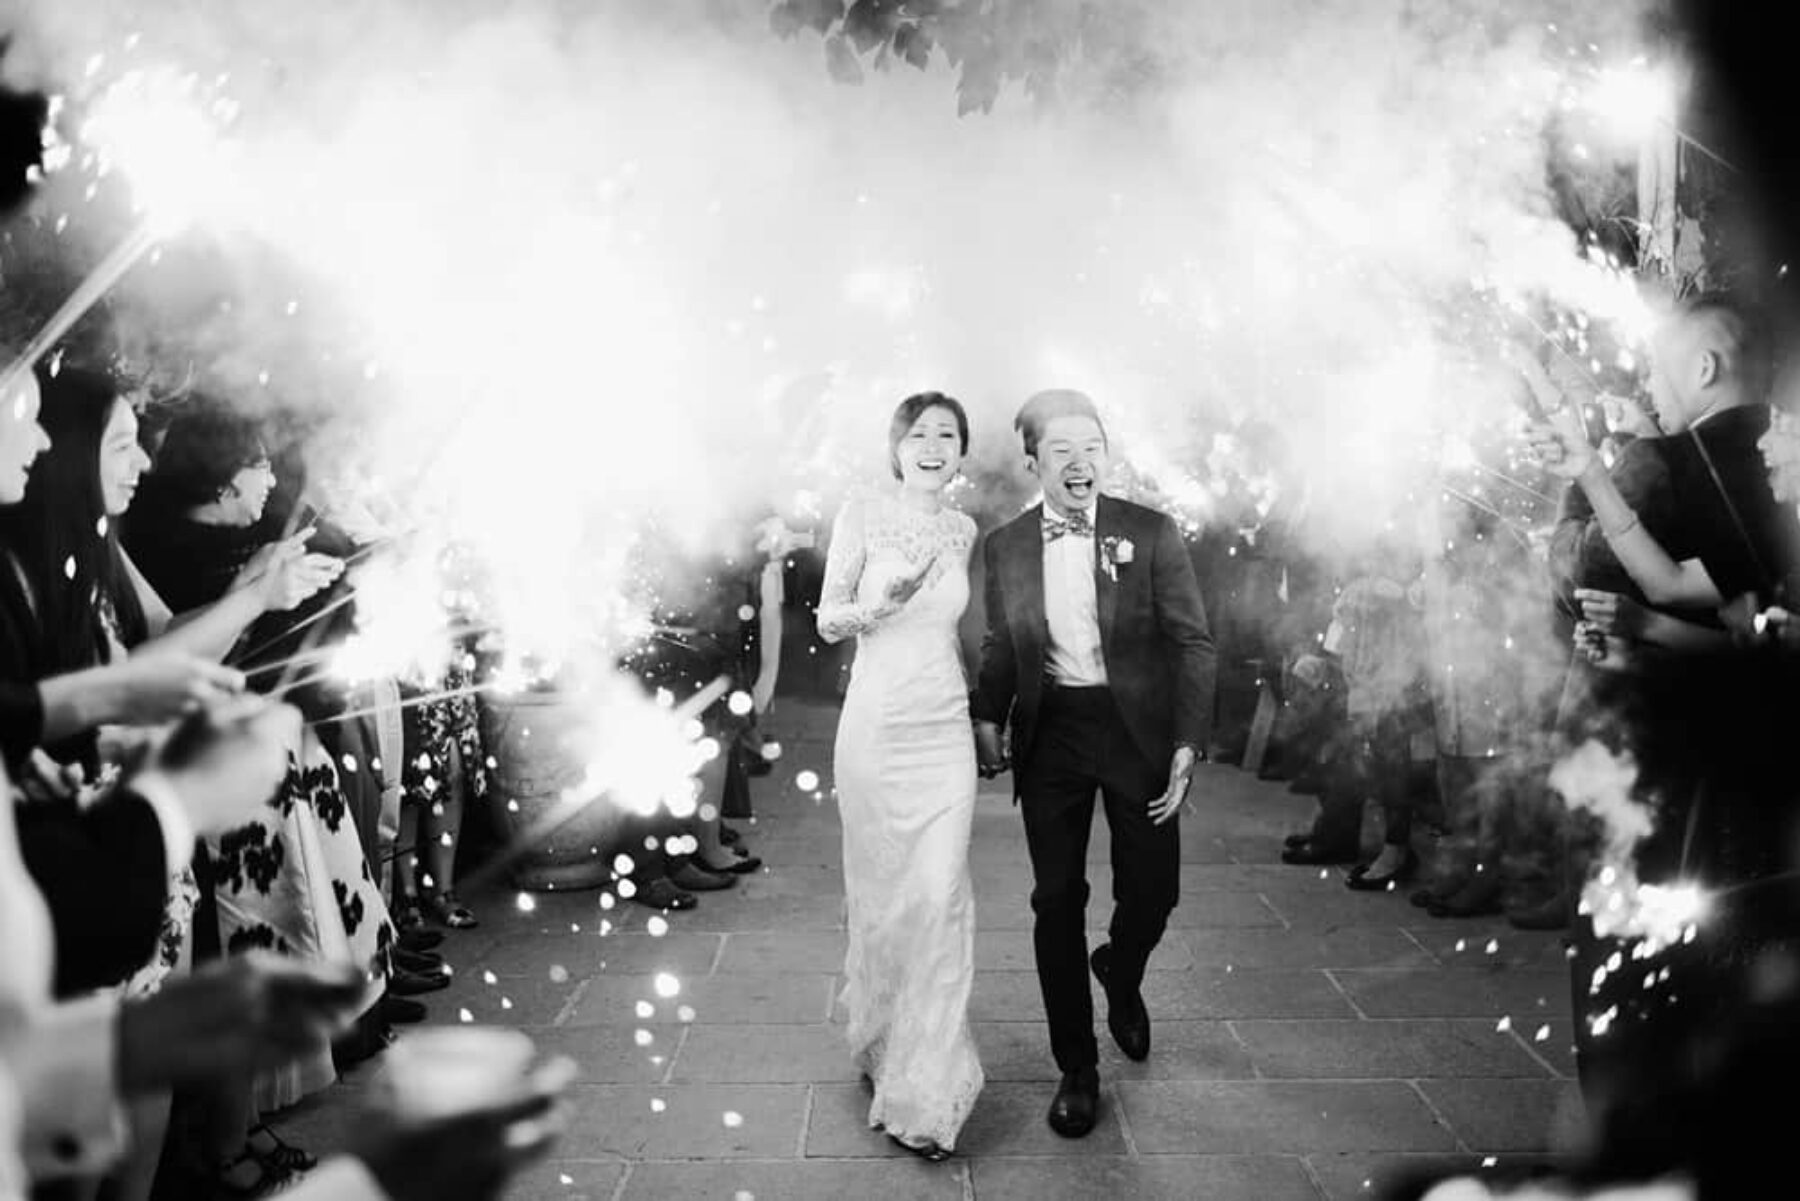 Sparkler wedding exit